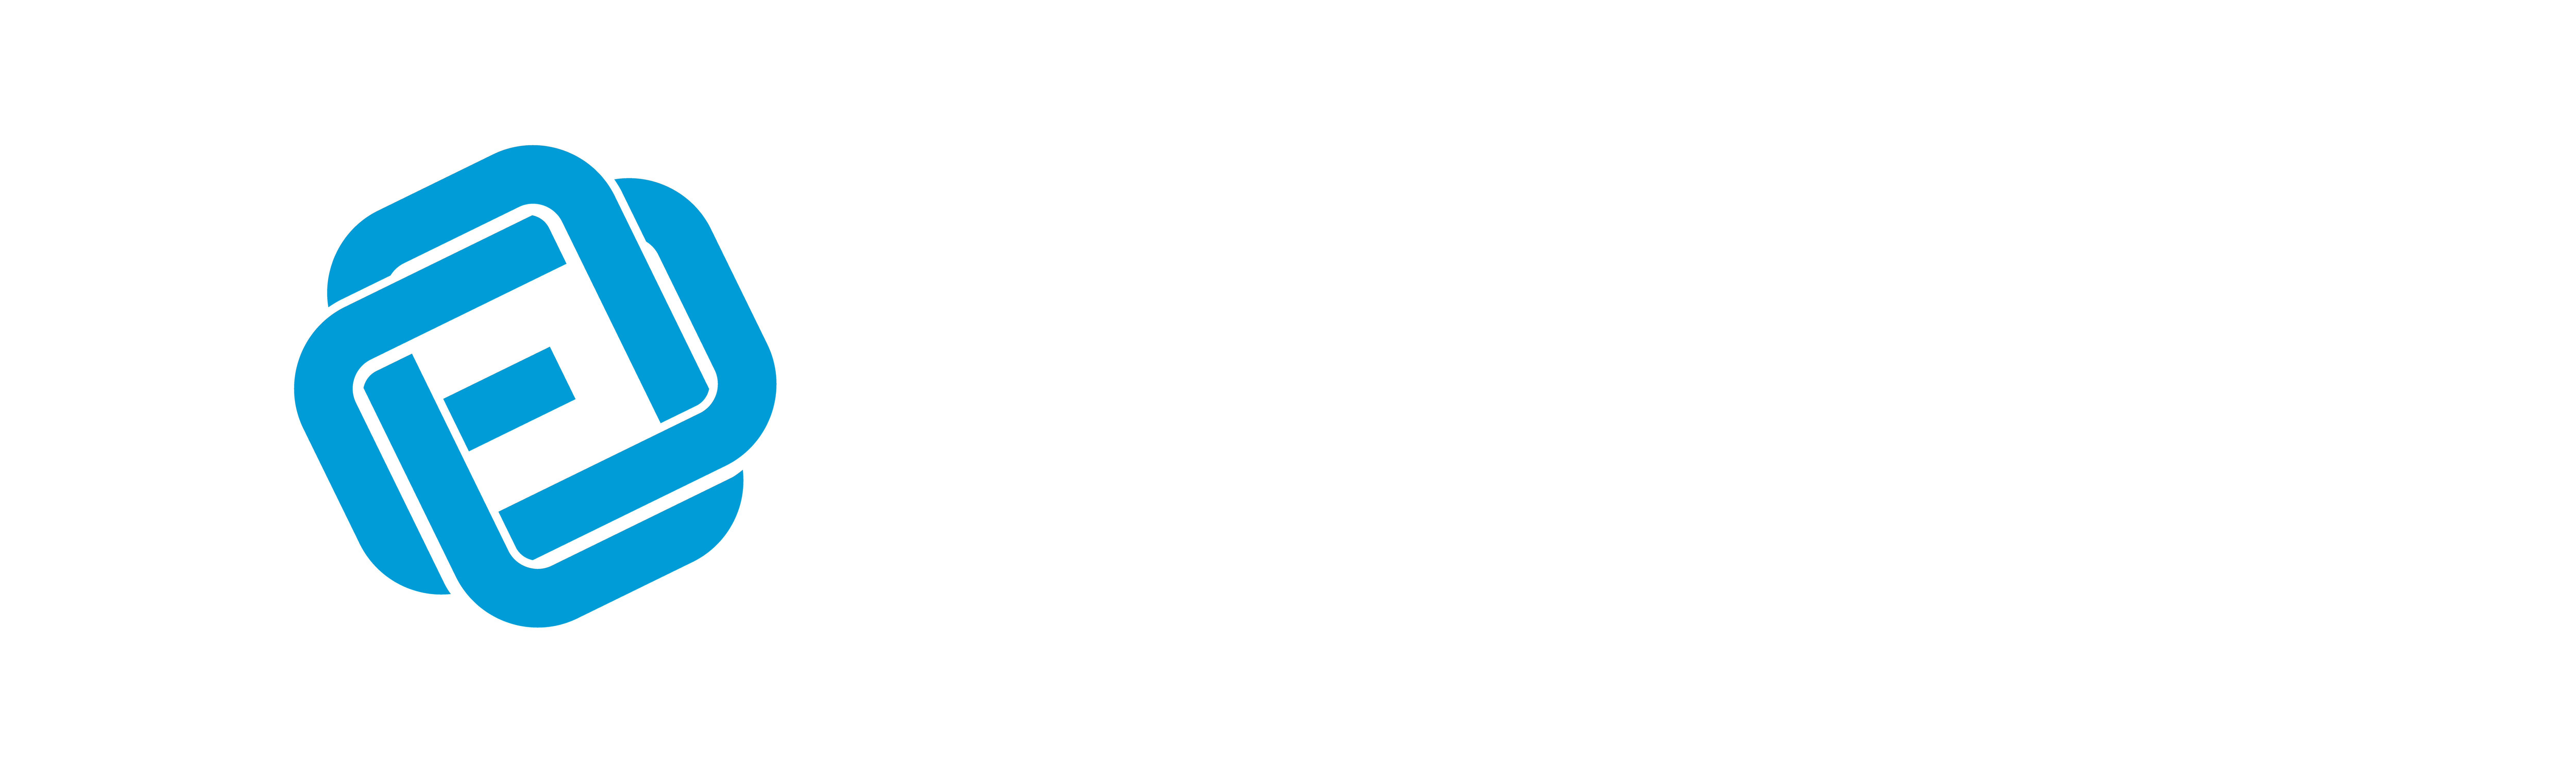 E Entertainment Logo - E-Link Entertainment